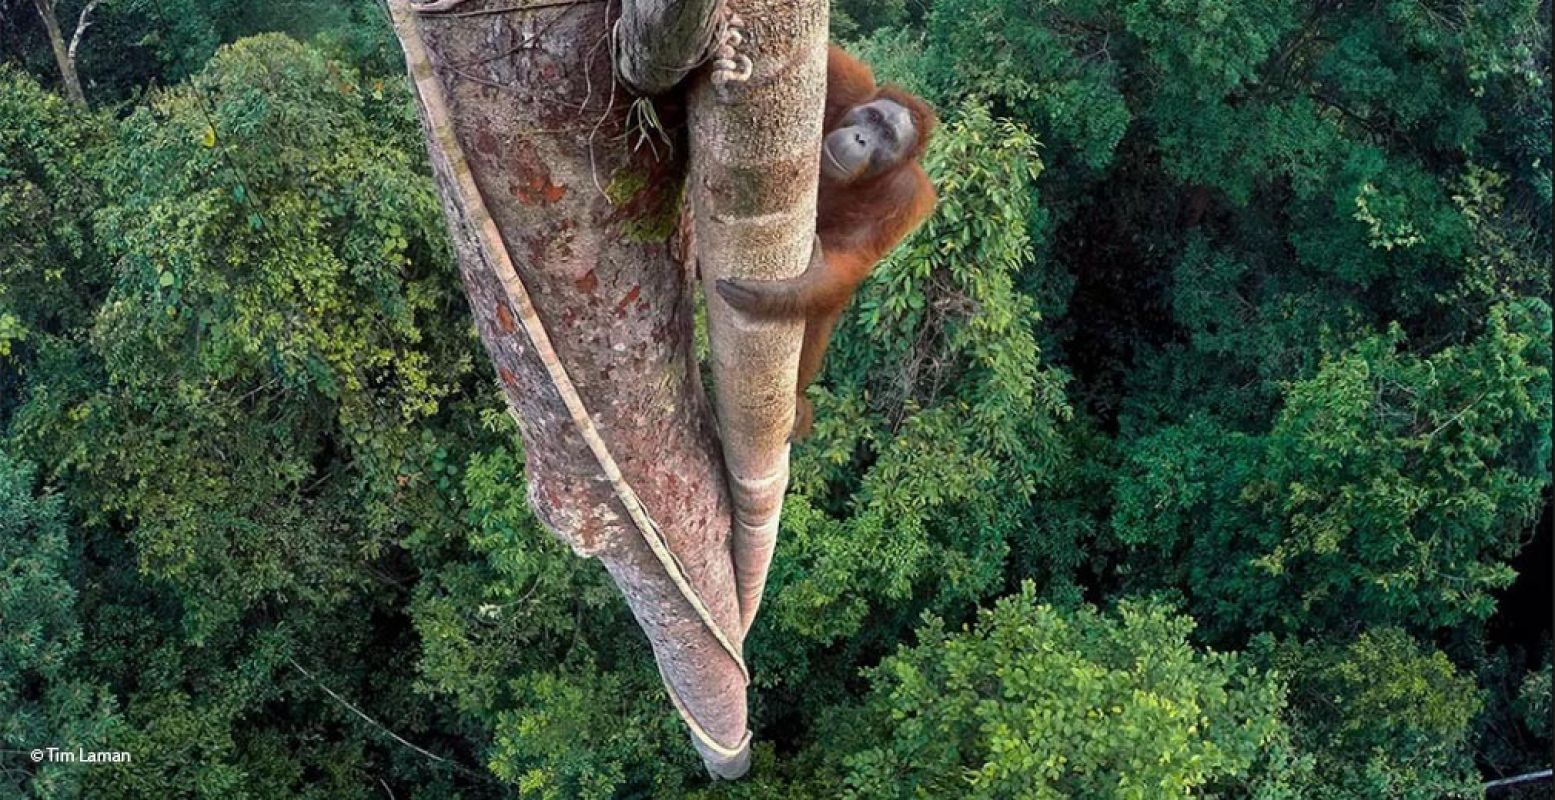 De winnaar van de Wildlife Photographer of the Year 2016: Tim Laman uit de Verenigde Staten, met 'Entwined lives'. Hij installeerde zijn camera's bovenin een boom en bestuurde ze van afstand. Zo kon hij een foto van een orang-oetan te maken die vijgen wilde plukken. Foto: Naturalis, Wildlife Photographer of the Year © Tim Laman.